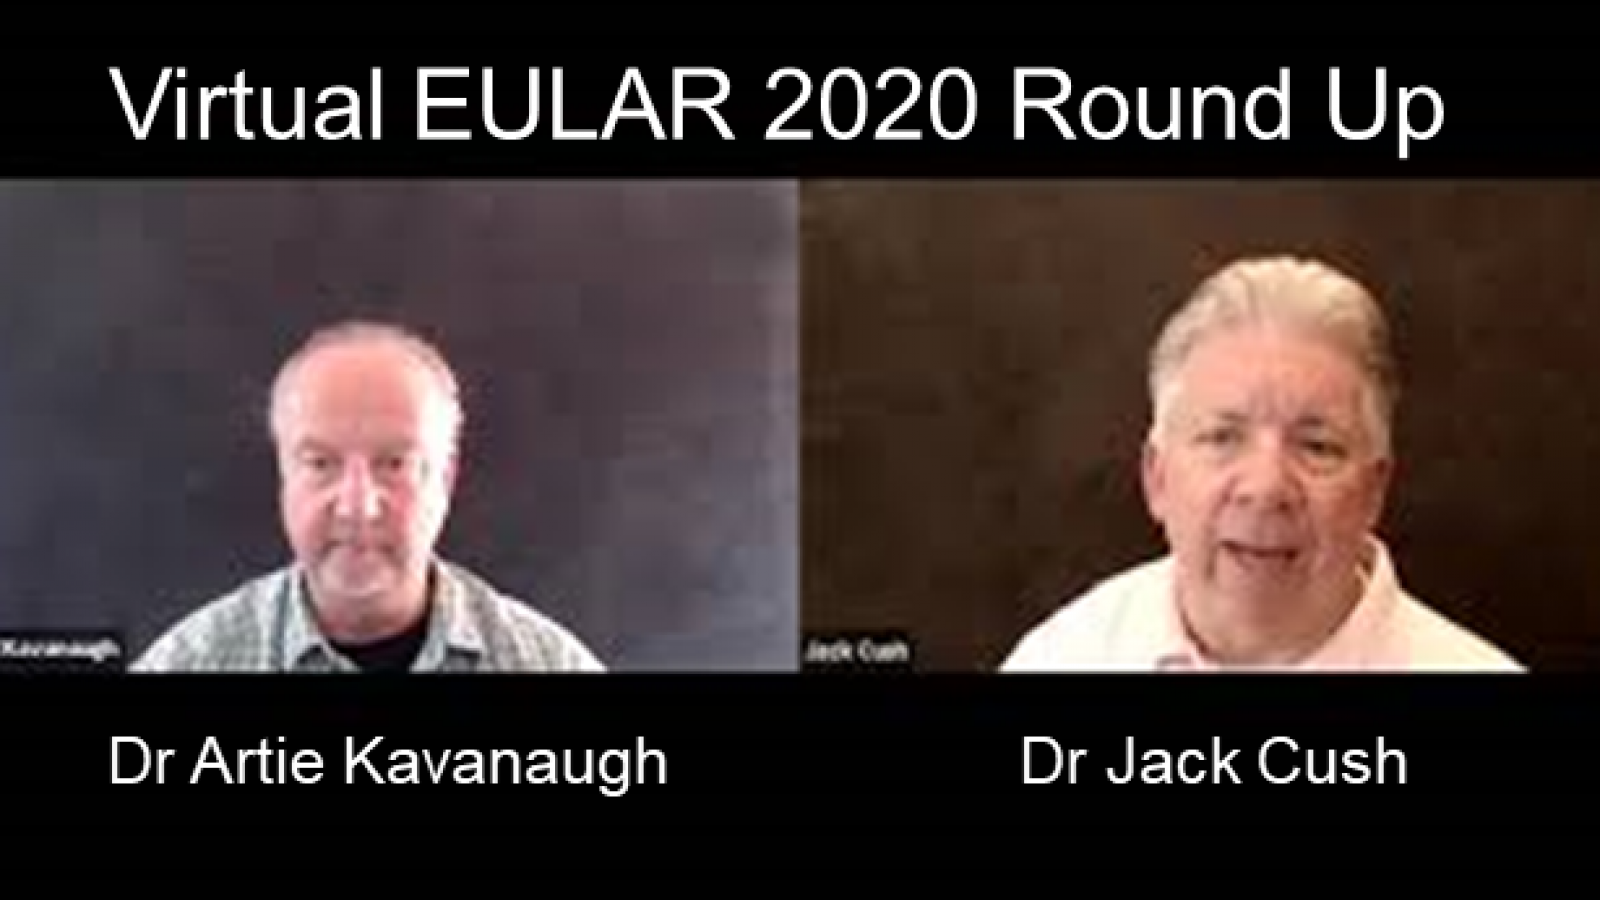 EULAR 2020 Roundup